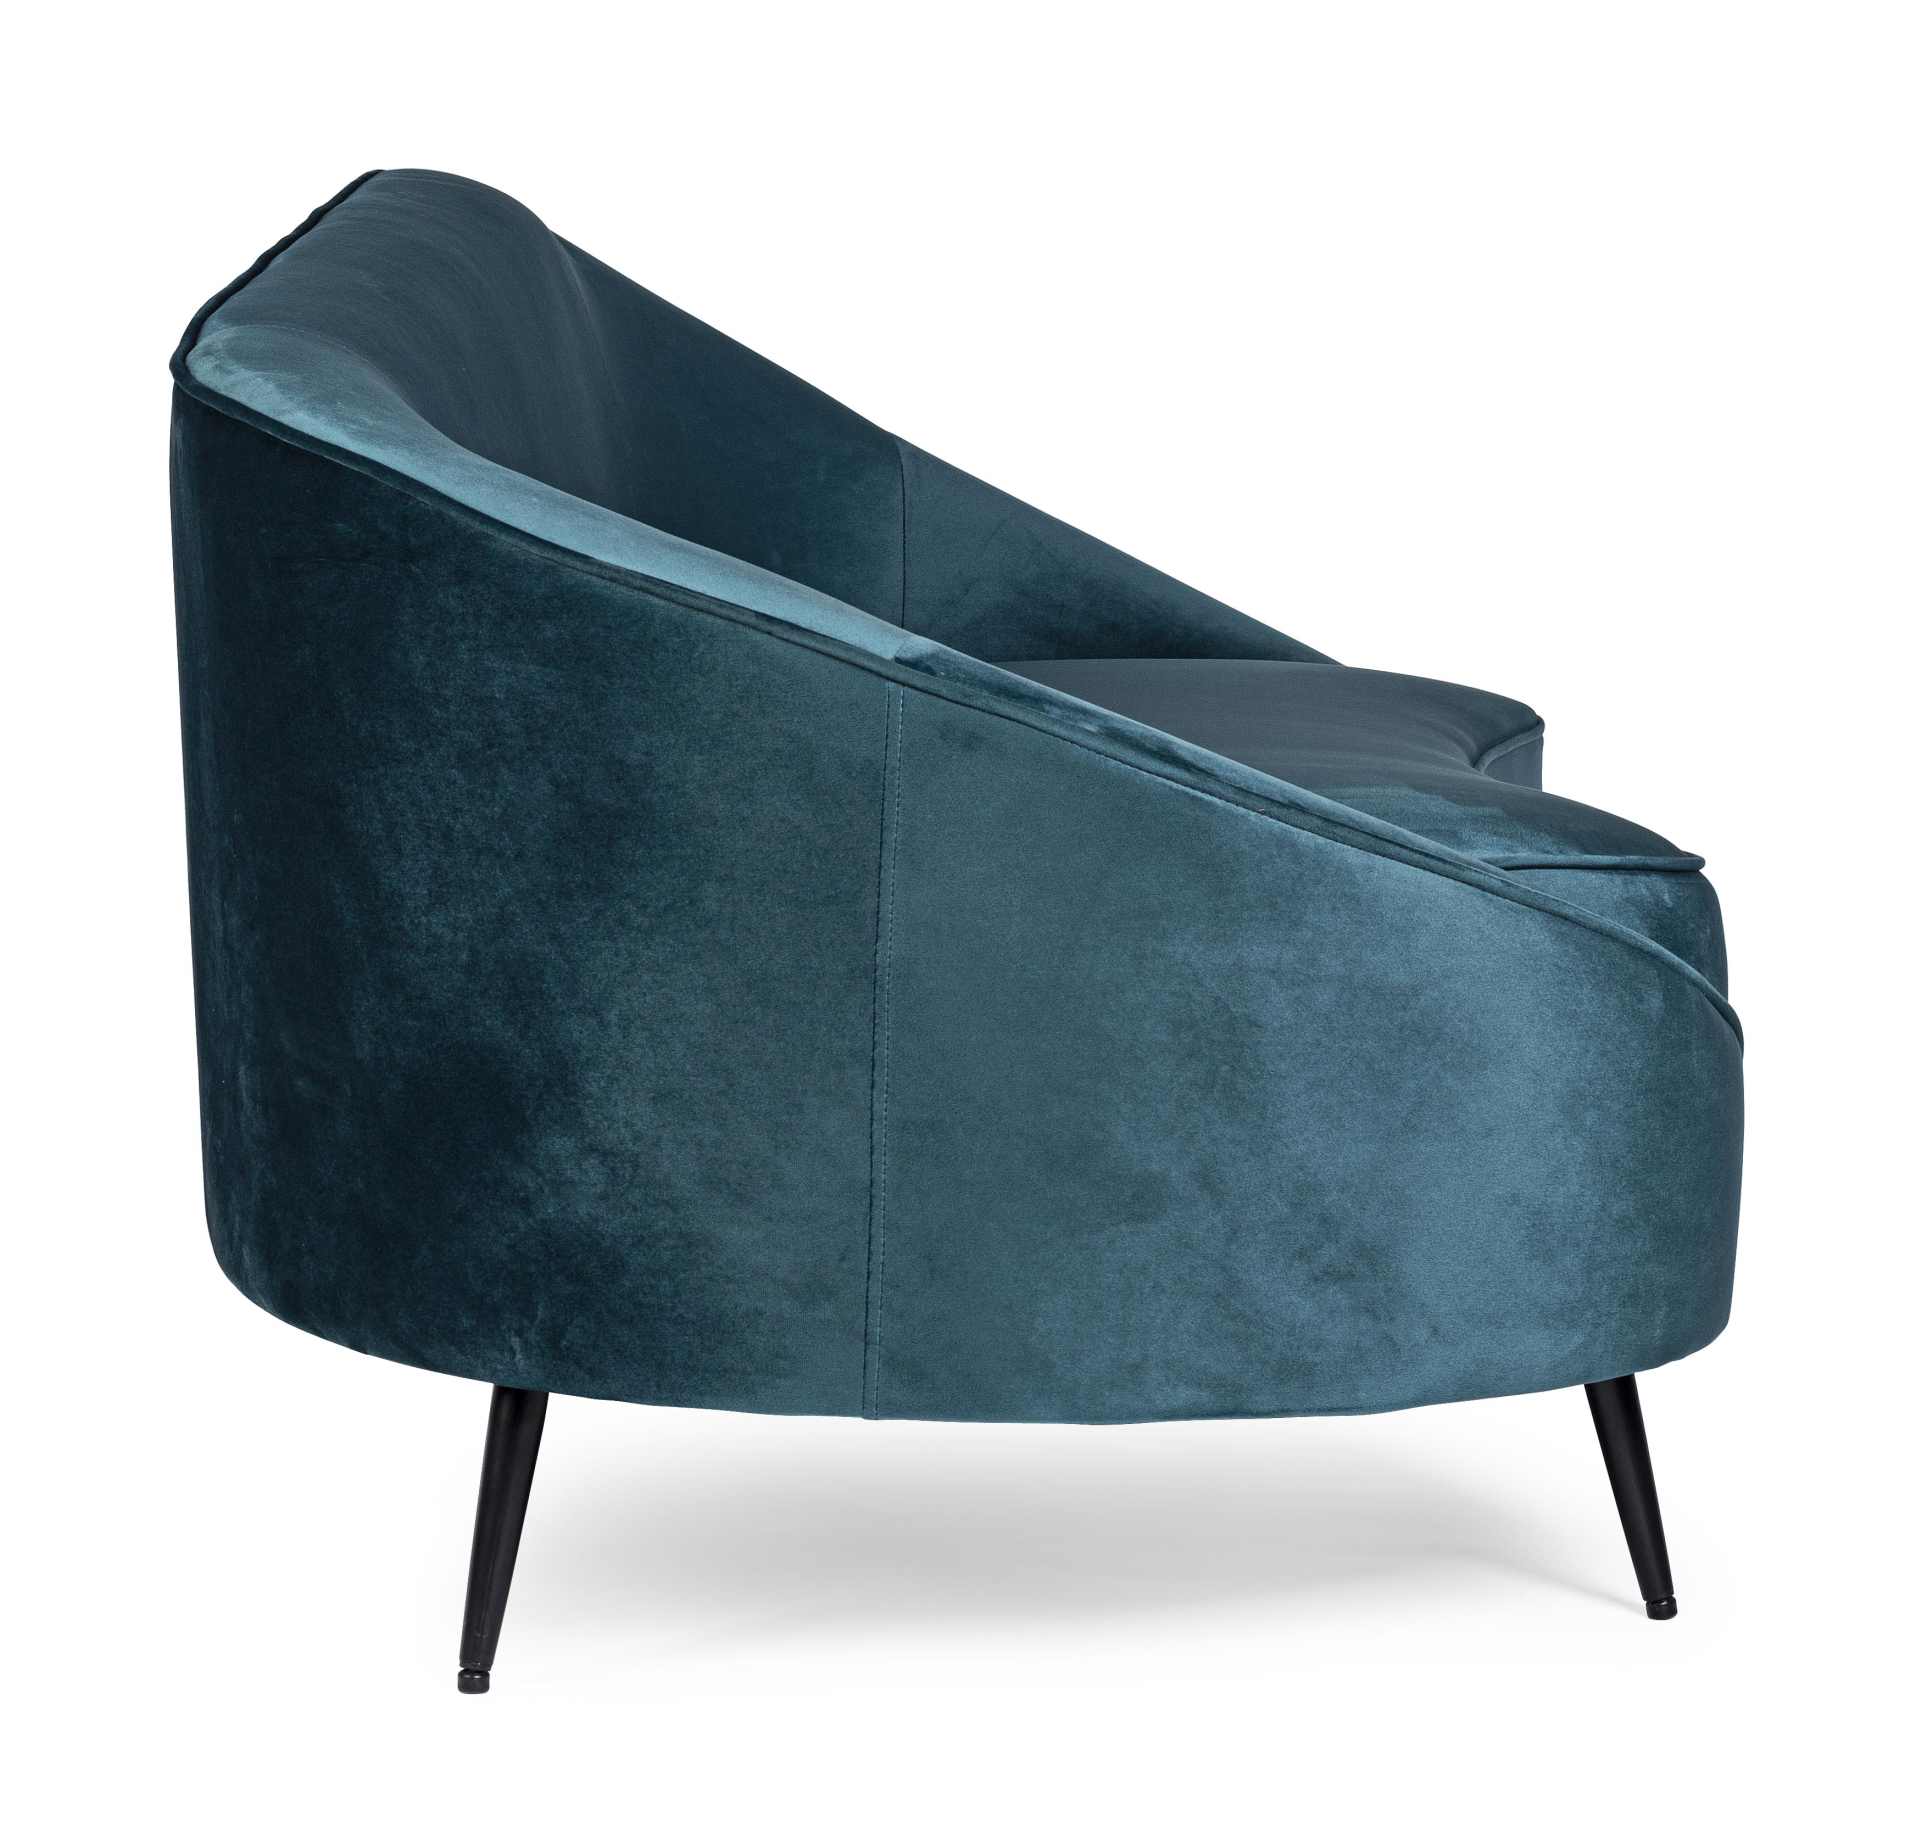 Das Sofa Seraphin überzeugt mit seinem modernen Design. Gefertigt wurde es aus Stoff in Samt-Optik, welcher einen blauen Farbton besitzt. Das Gestell ist aus Metall und hat eine schwarze Farbe. Das Sofa ist in der Ausführung als 2-Sitzer. Die Breite beträ